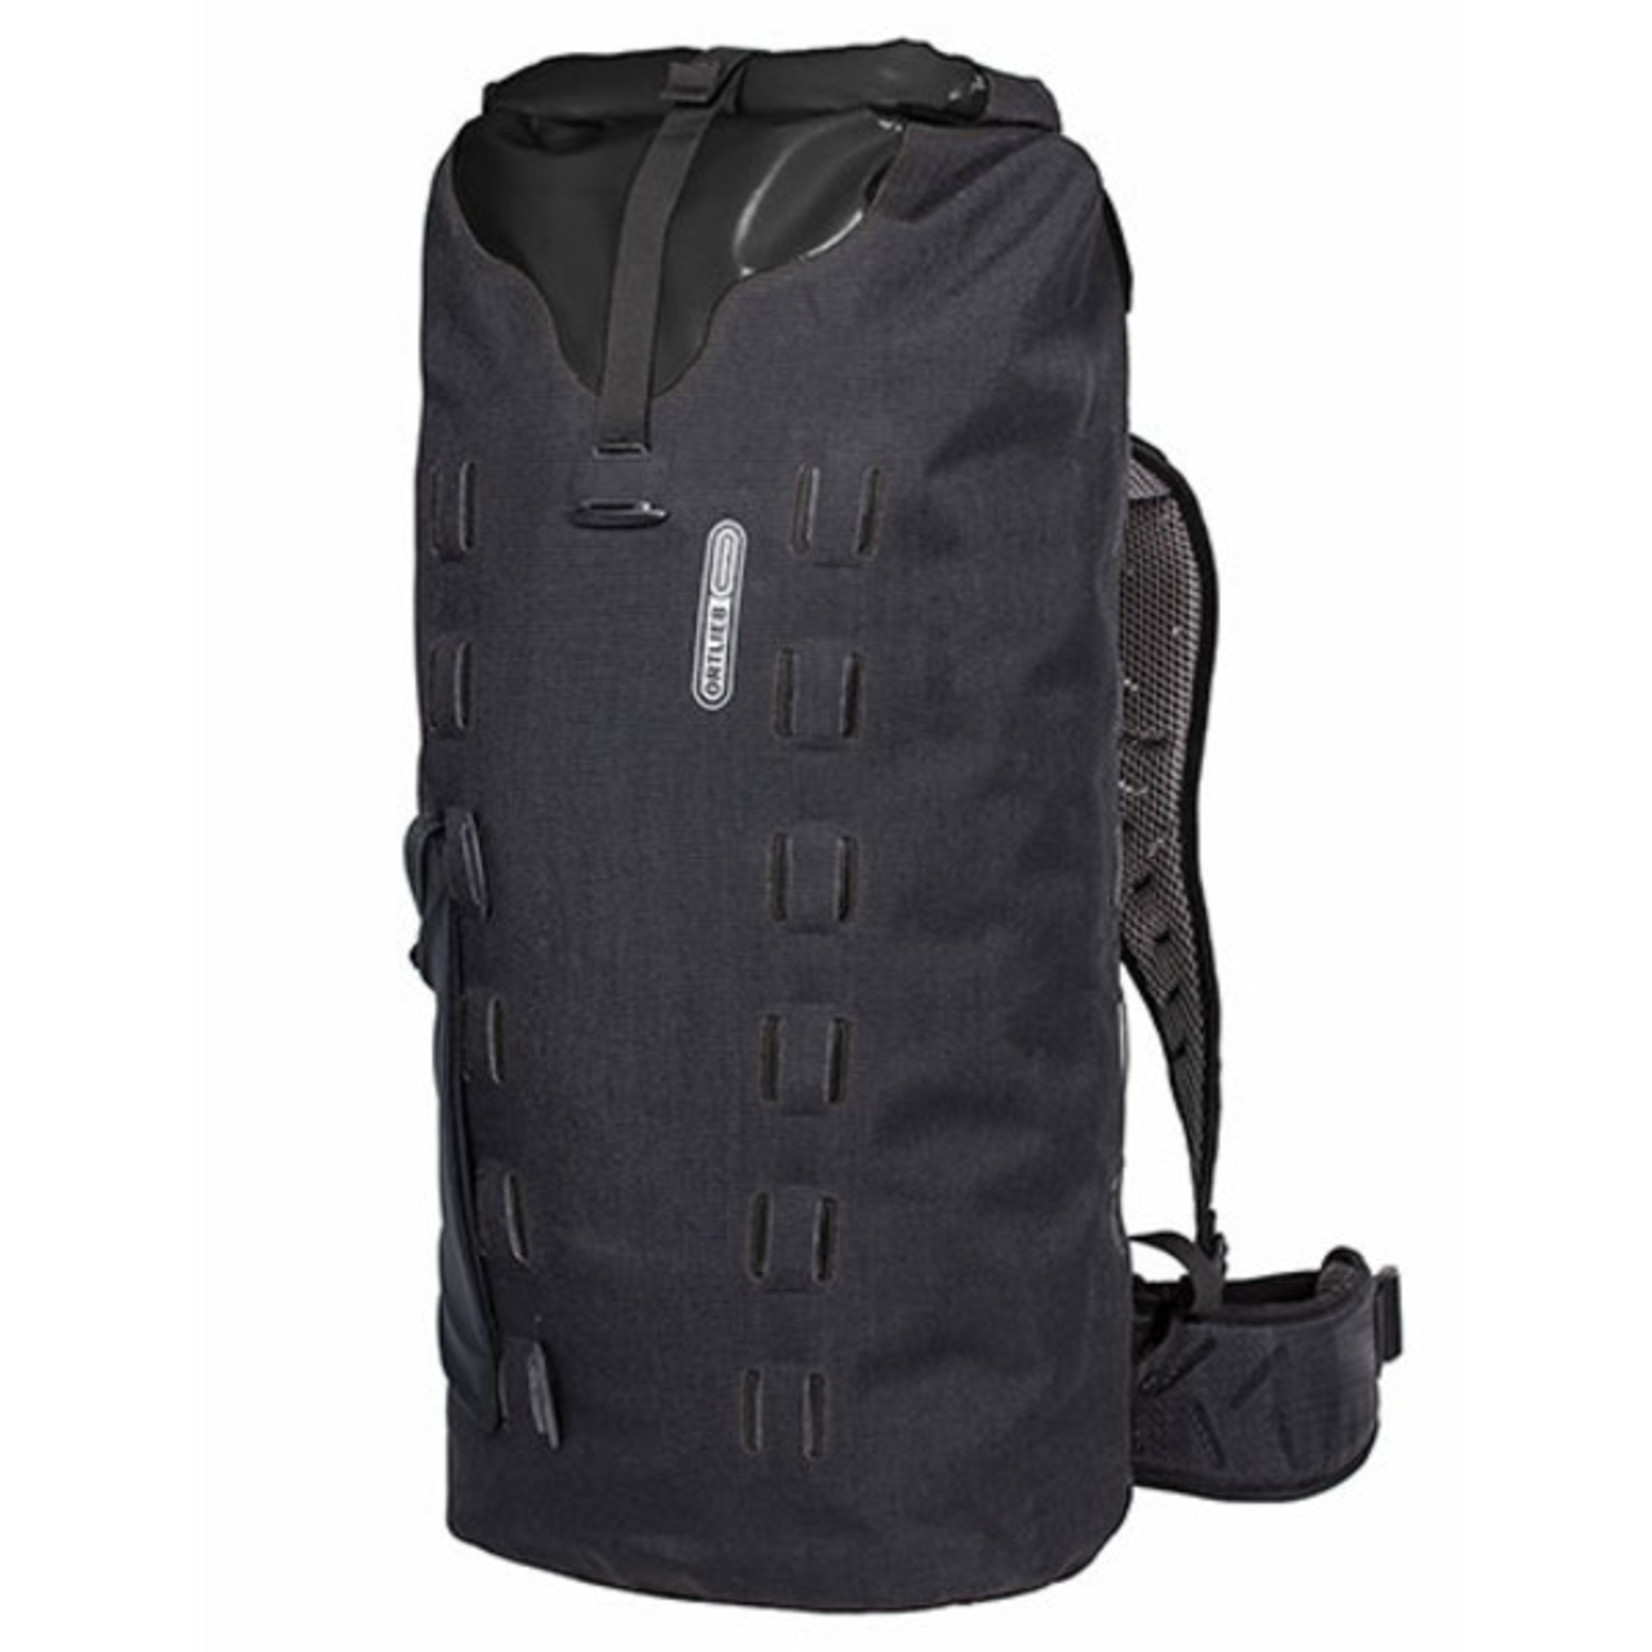 Ortlieb New Ortlieb R17151 Gear-Pack Backpack Waterproof - 40L Black